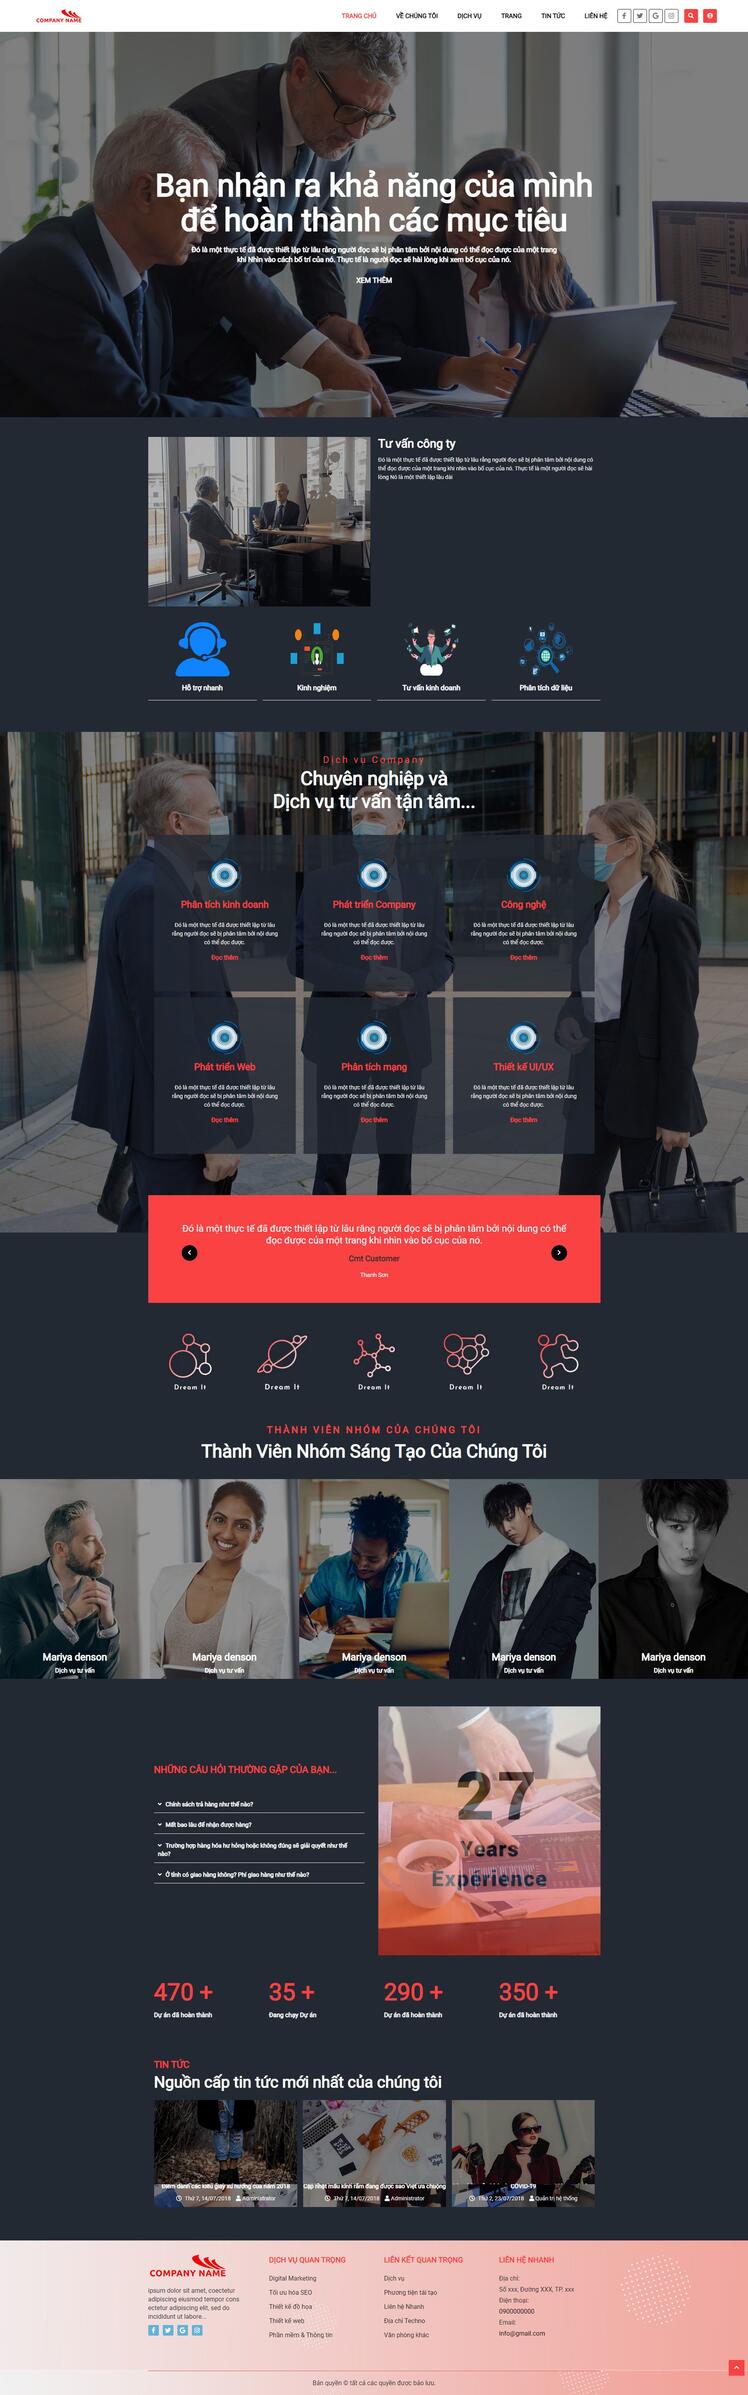 Thiết kế website giới thiệu doanh nghiệp 30